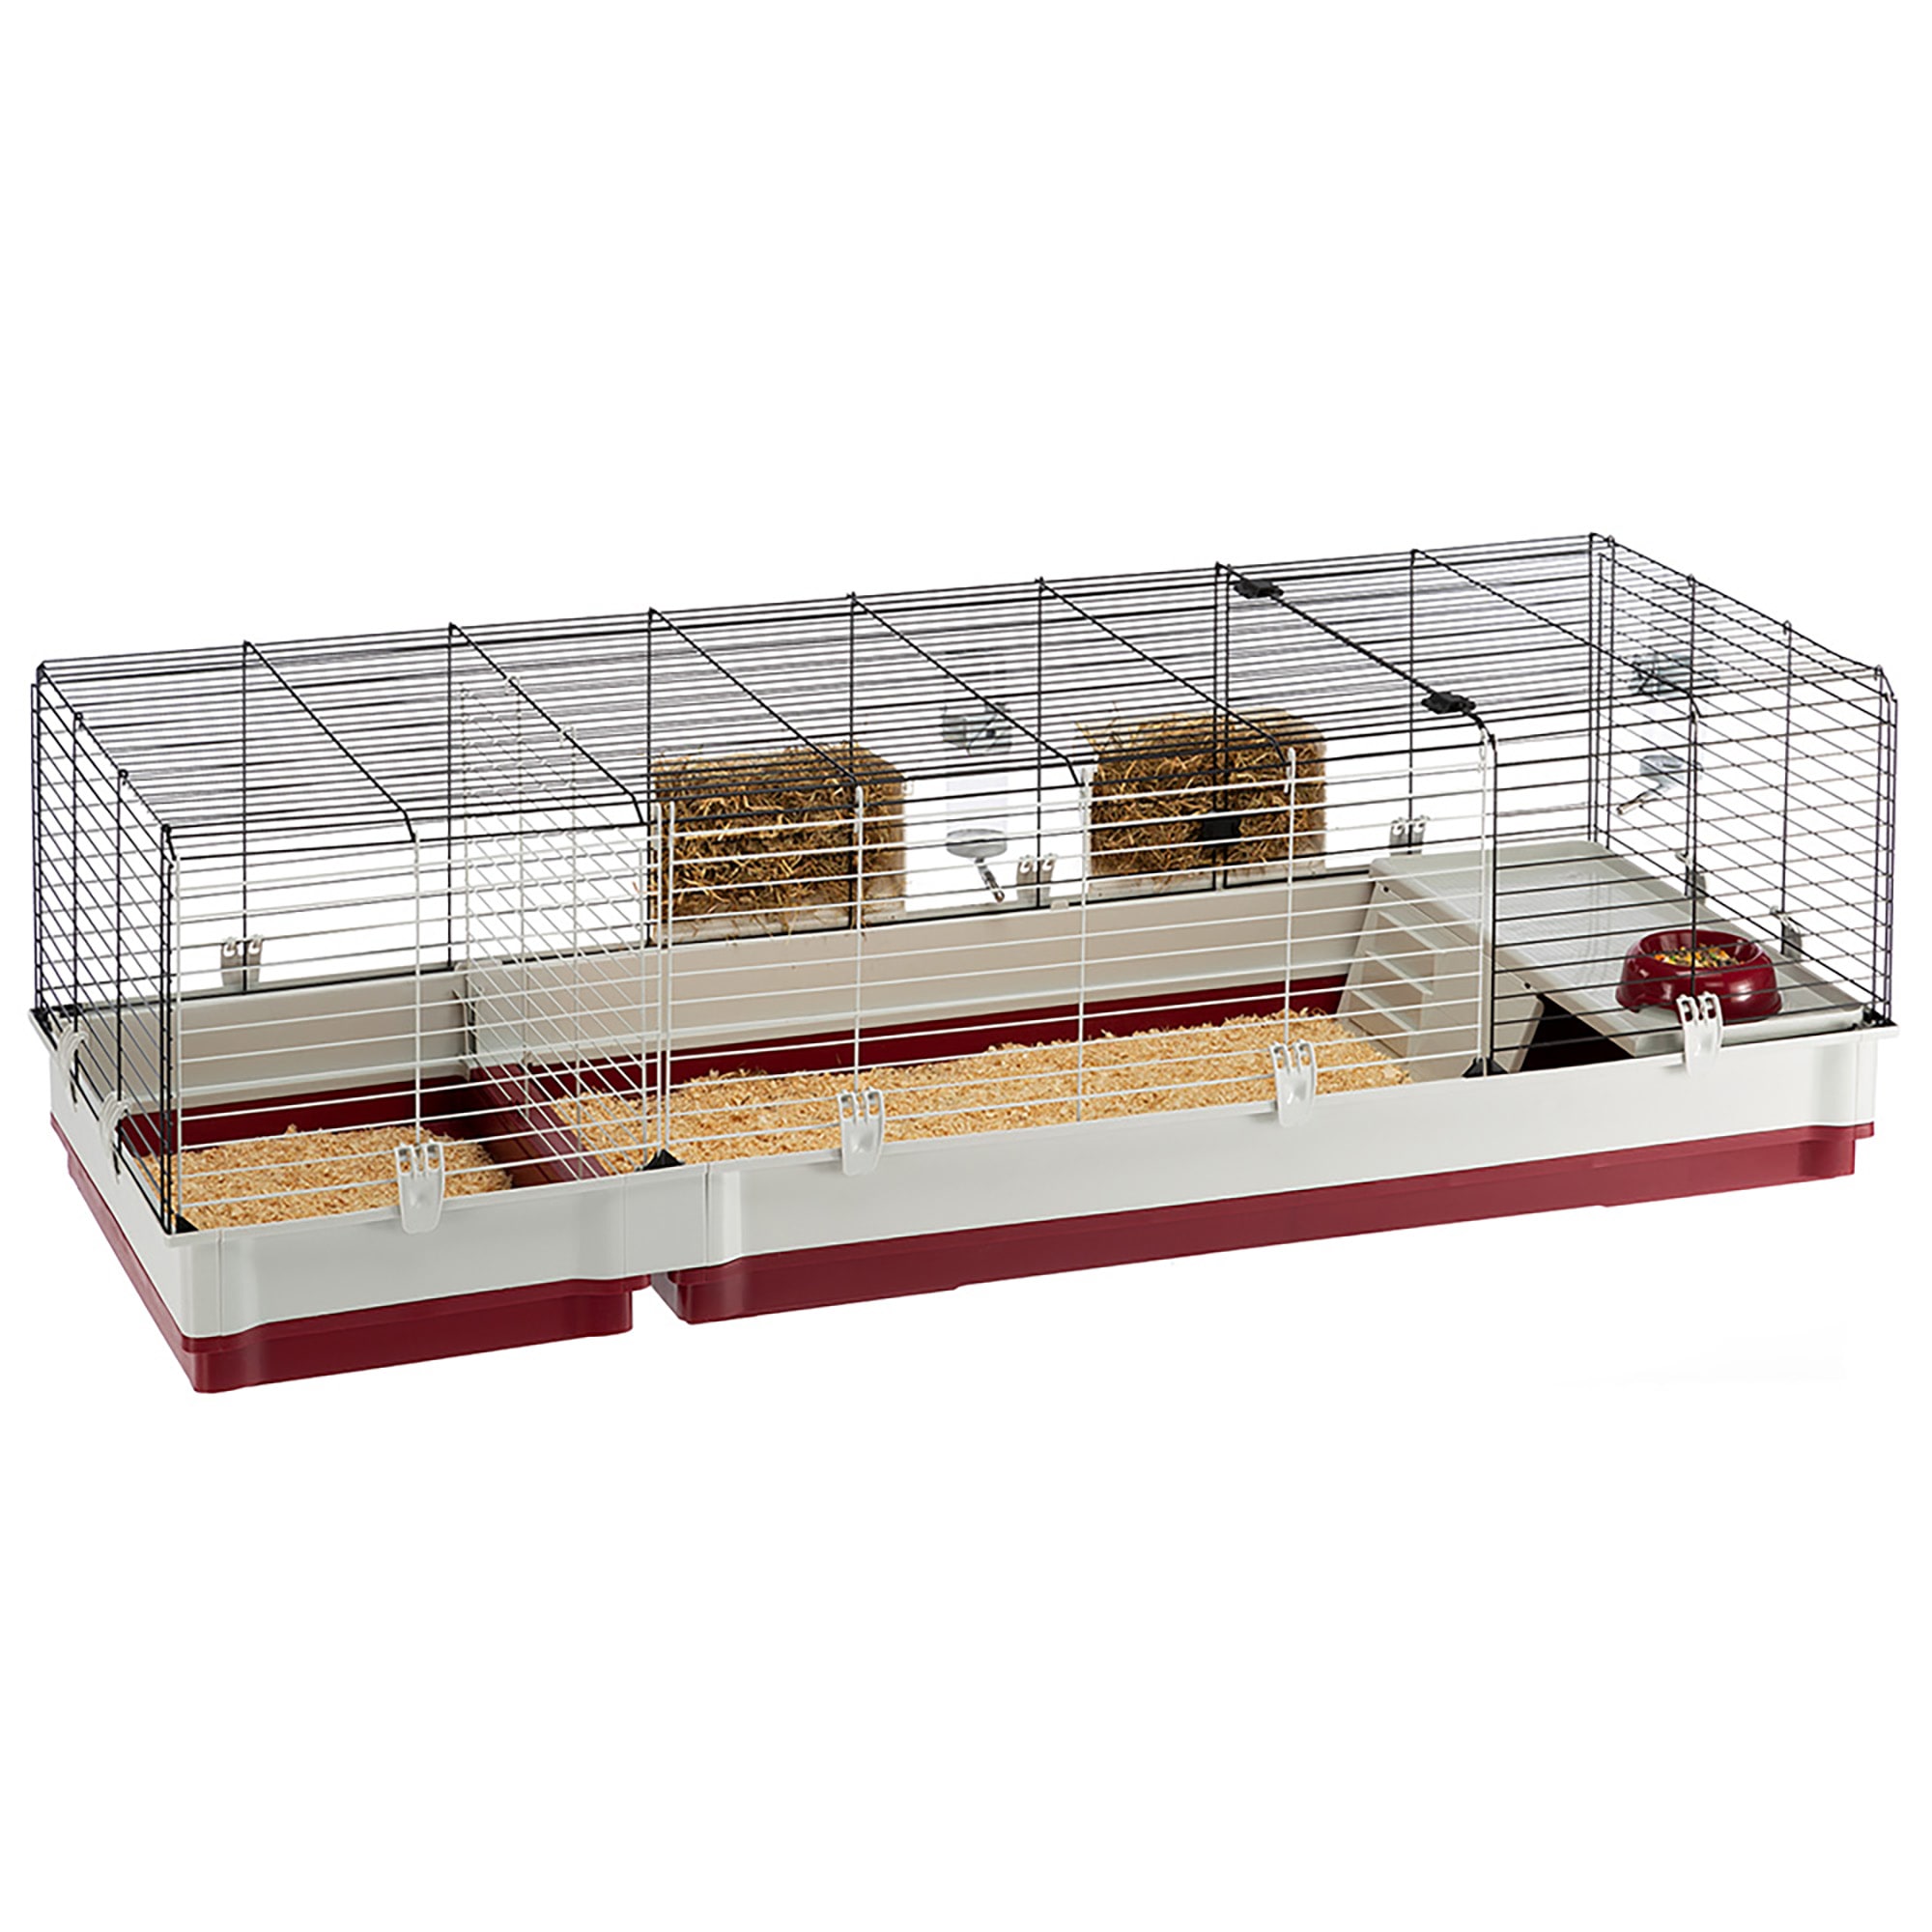 Vrijgekomen Subsidie verlichten Ferplast Krolik Rabbit Habitat 160 Cage with Accessories, 19.76" H | Petco